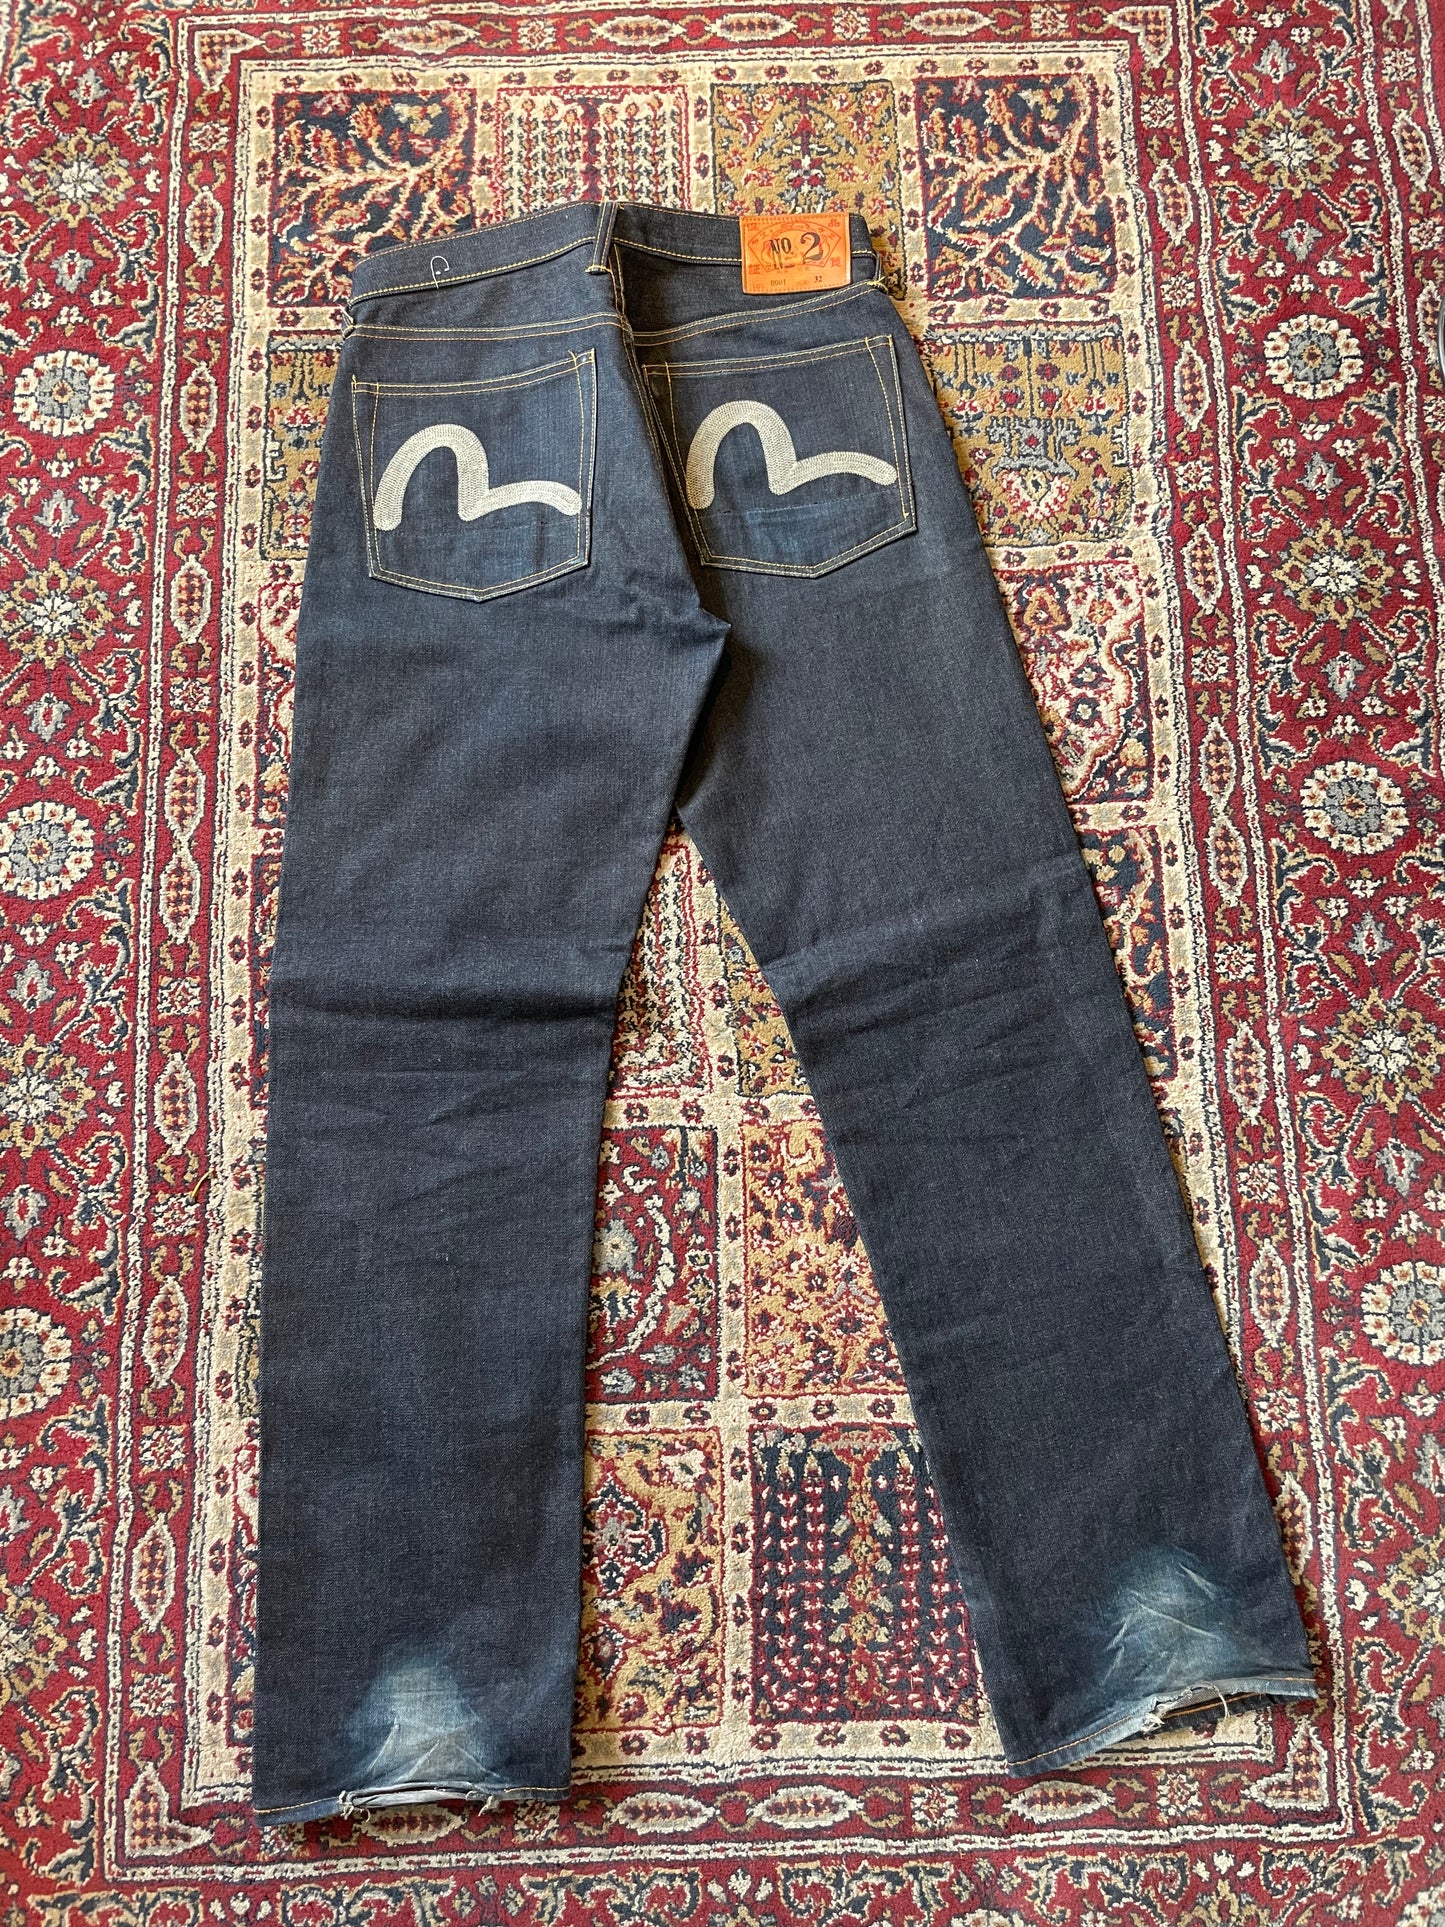 Evisu No_2 Lot 0001 Selvedge Denim jeans